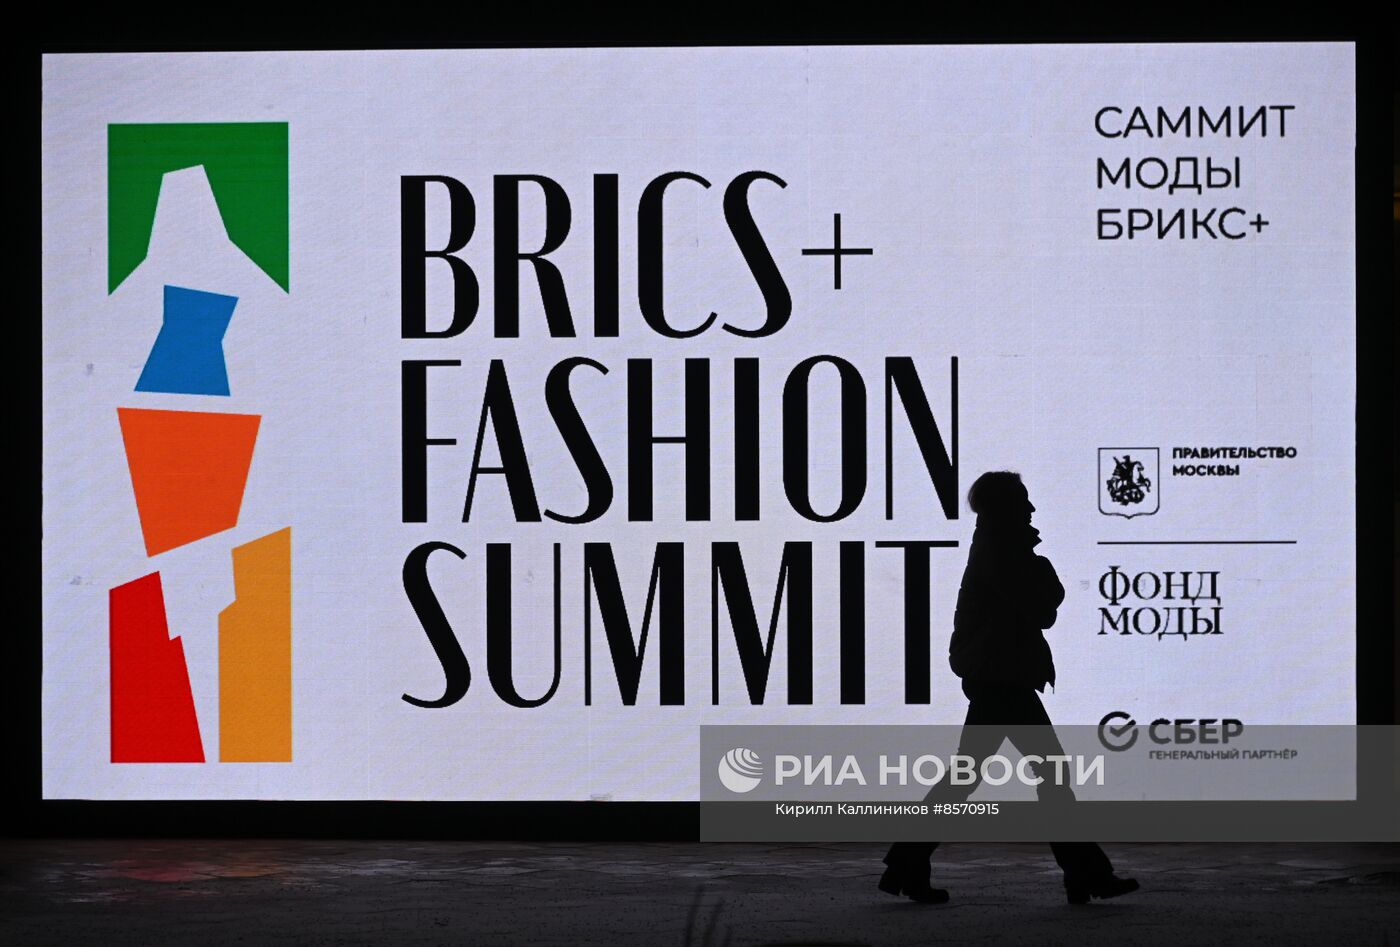 Модные показы в рамках "BRICS+ Fashion Summit"